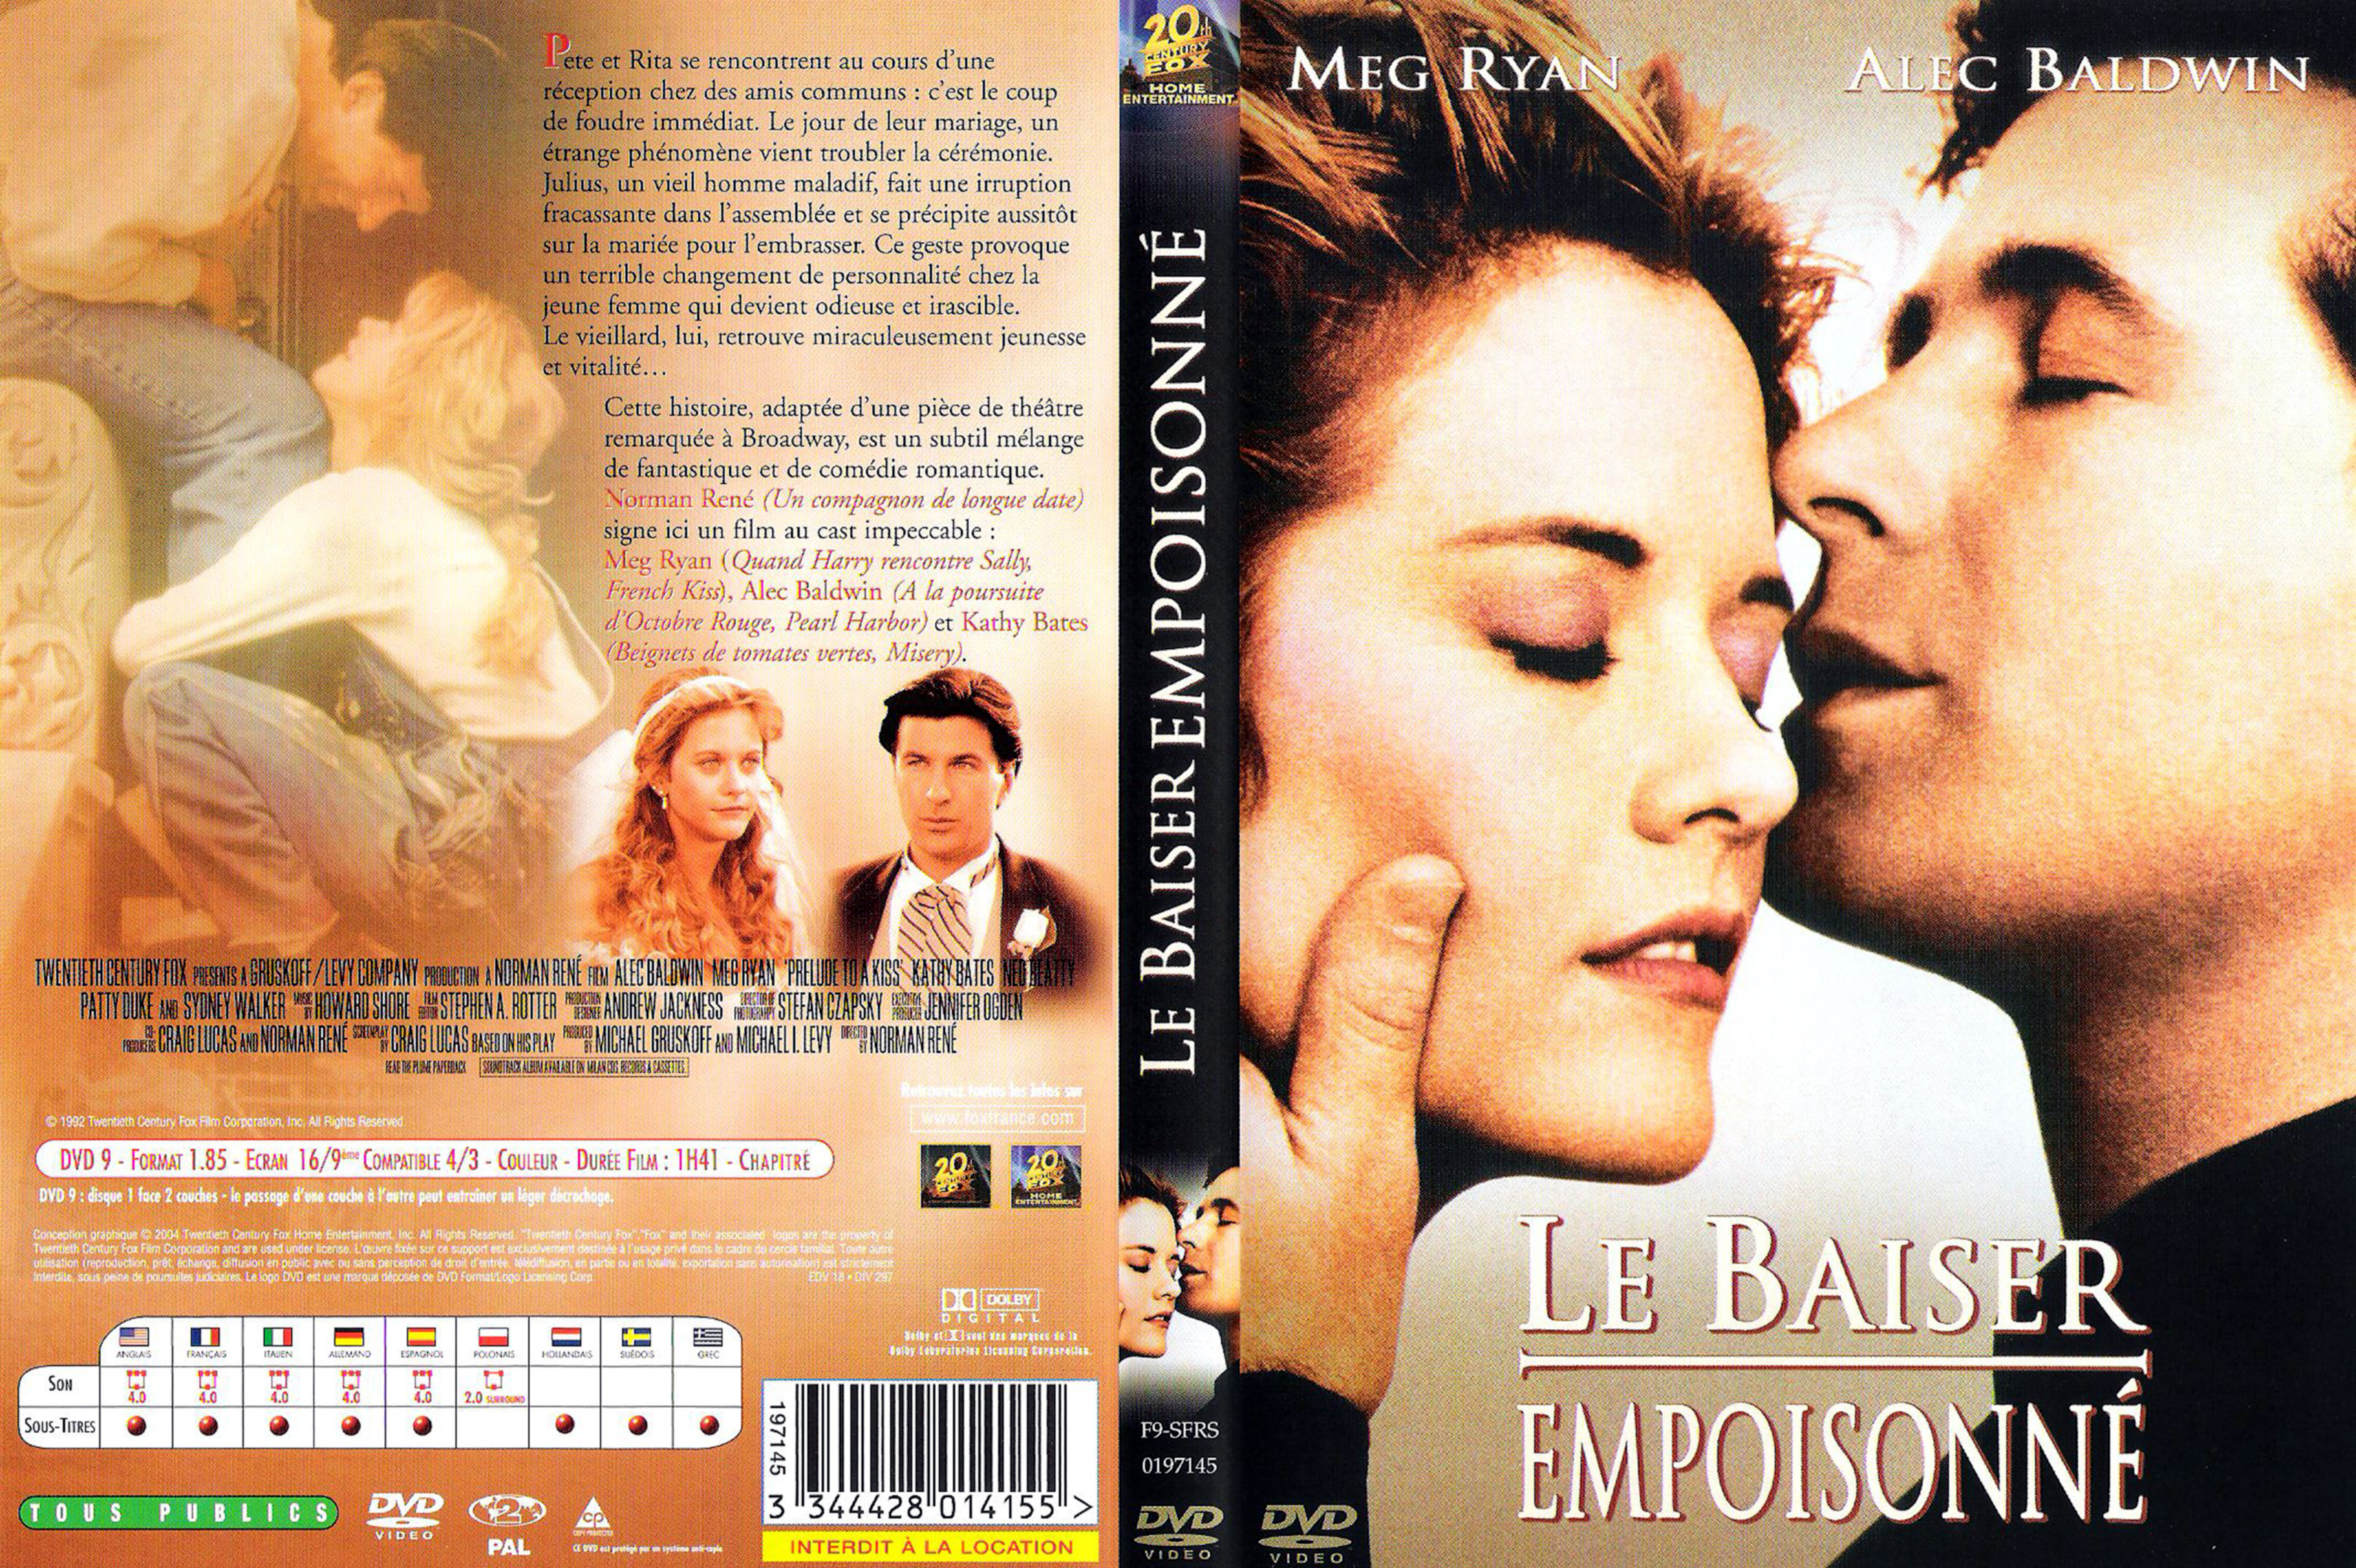 Jaquette DVD Le baiser empoisonn v2